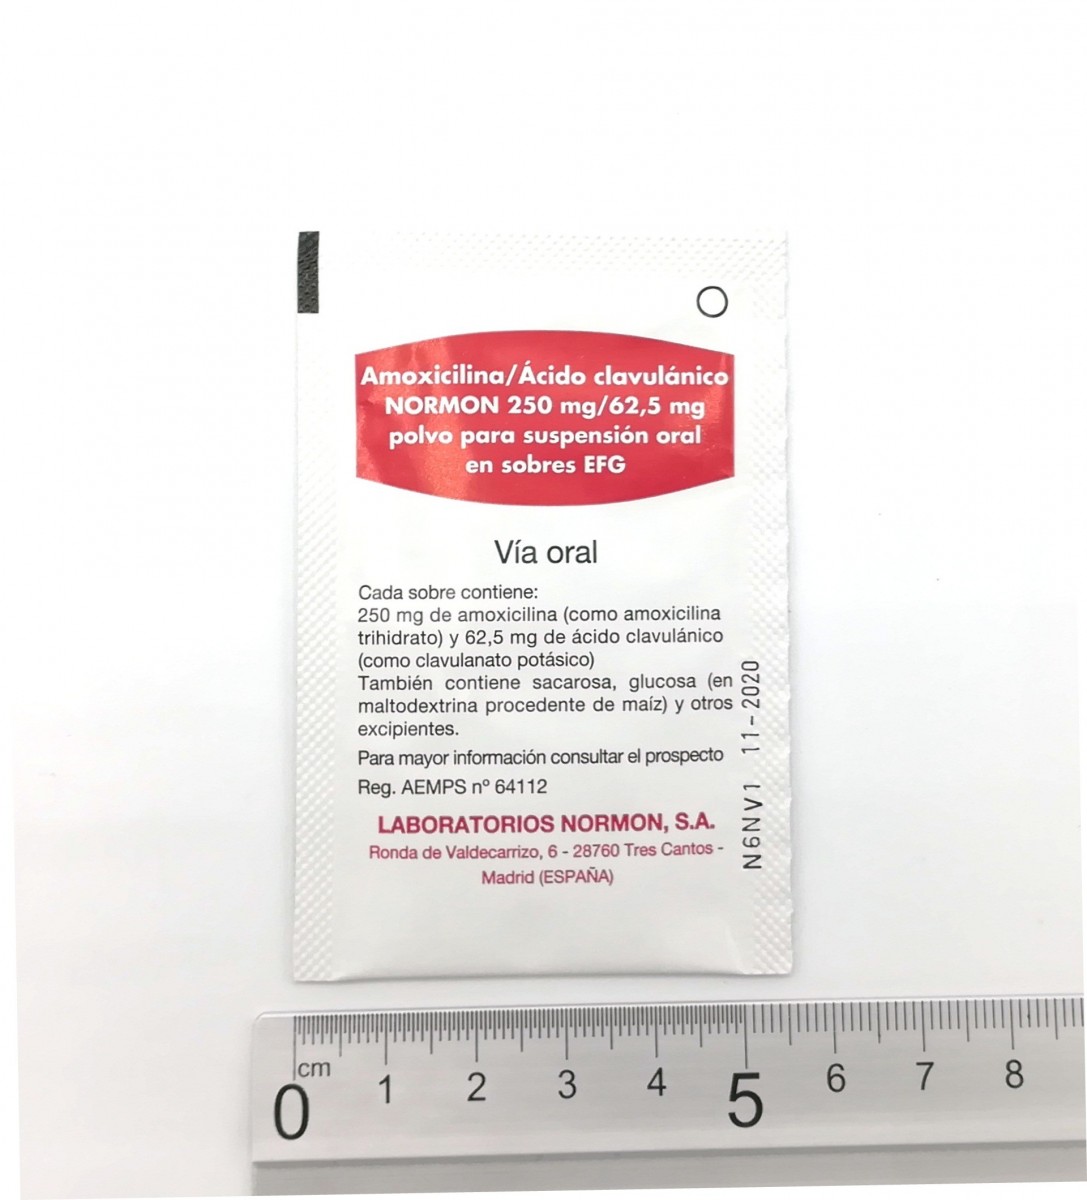 AMOXICILINA/ACIDO CLAVULANICO NORMON 250 mg/62,5 mg  POLVO PARA SUSPENSION ORAL EN SOBRES EFG, 12 sobres fotografía de la forma farmacéutica.